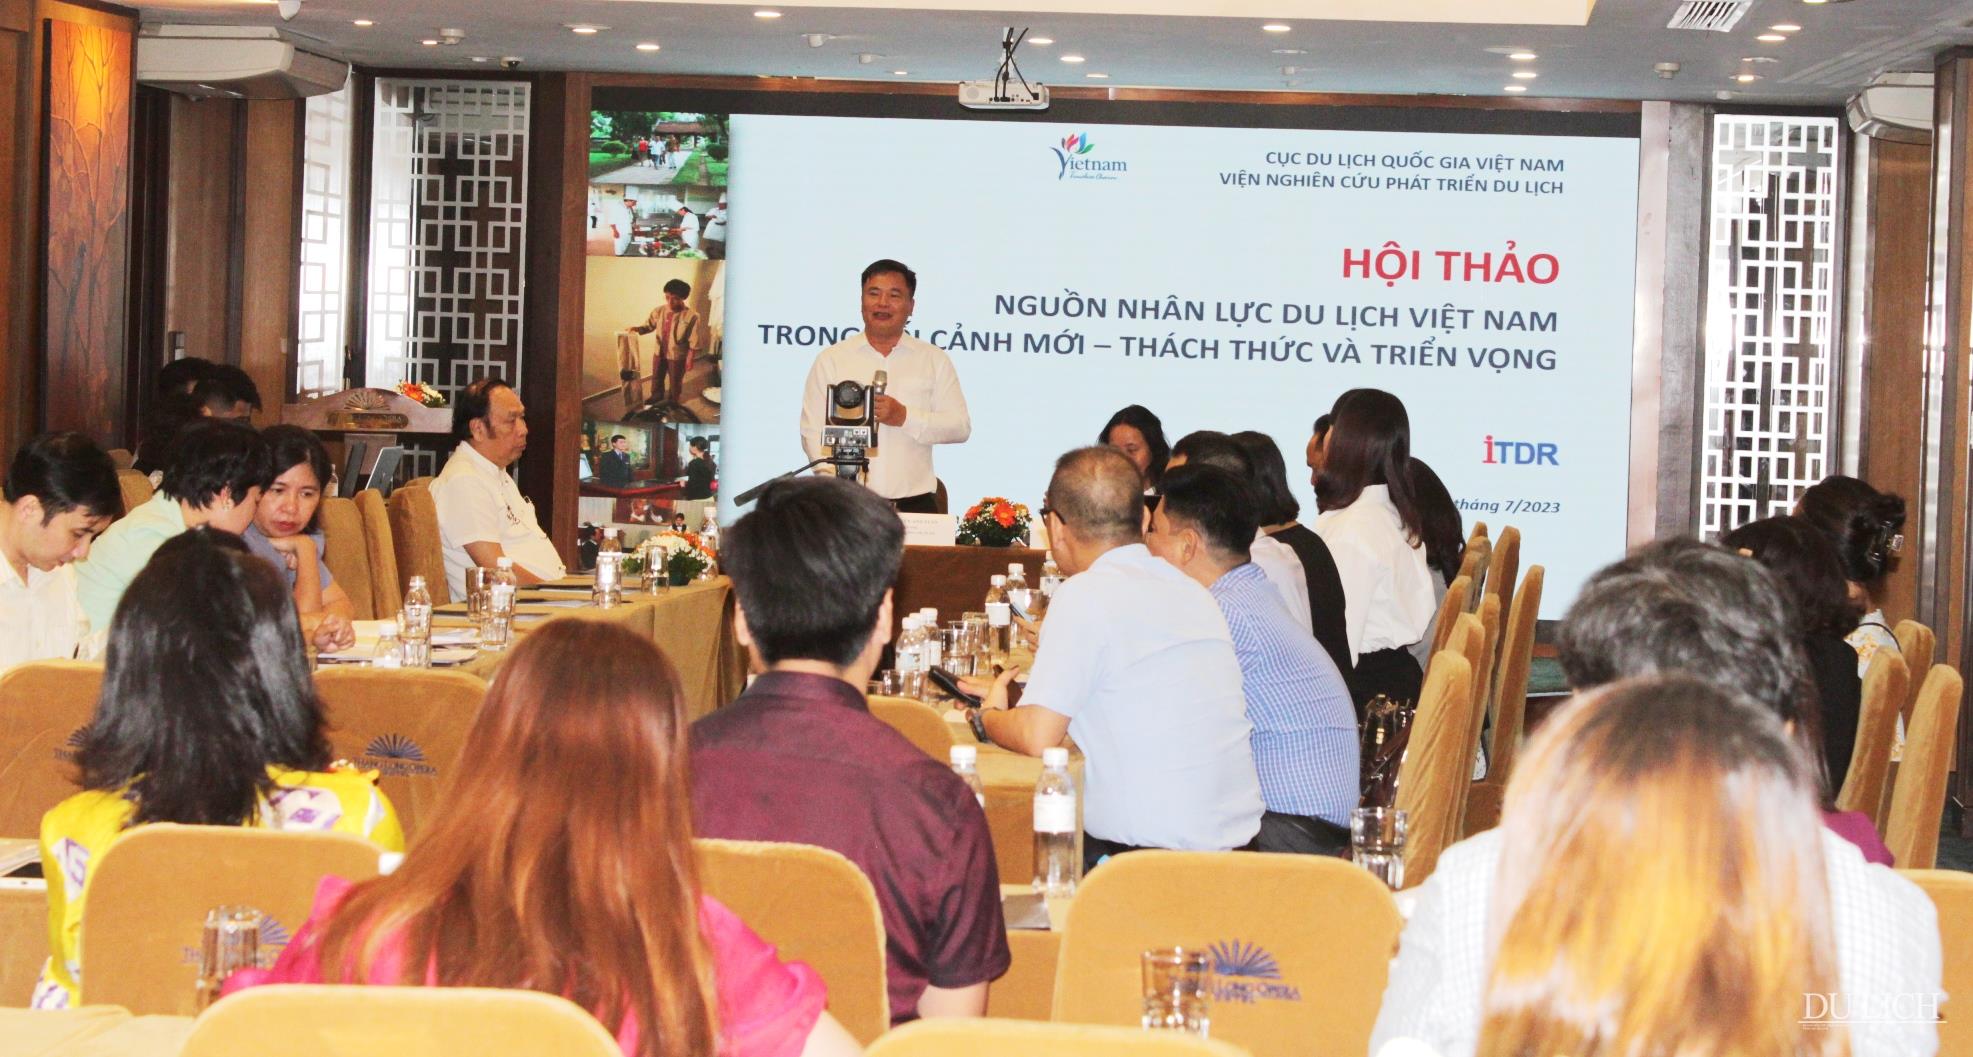 TS. Nguyễn Anh Tuấn – Viện trưởng Viện Nghiên cứu phát triển du lịch kết luận Hội thảo